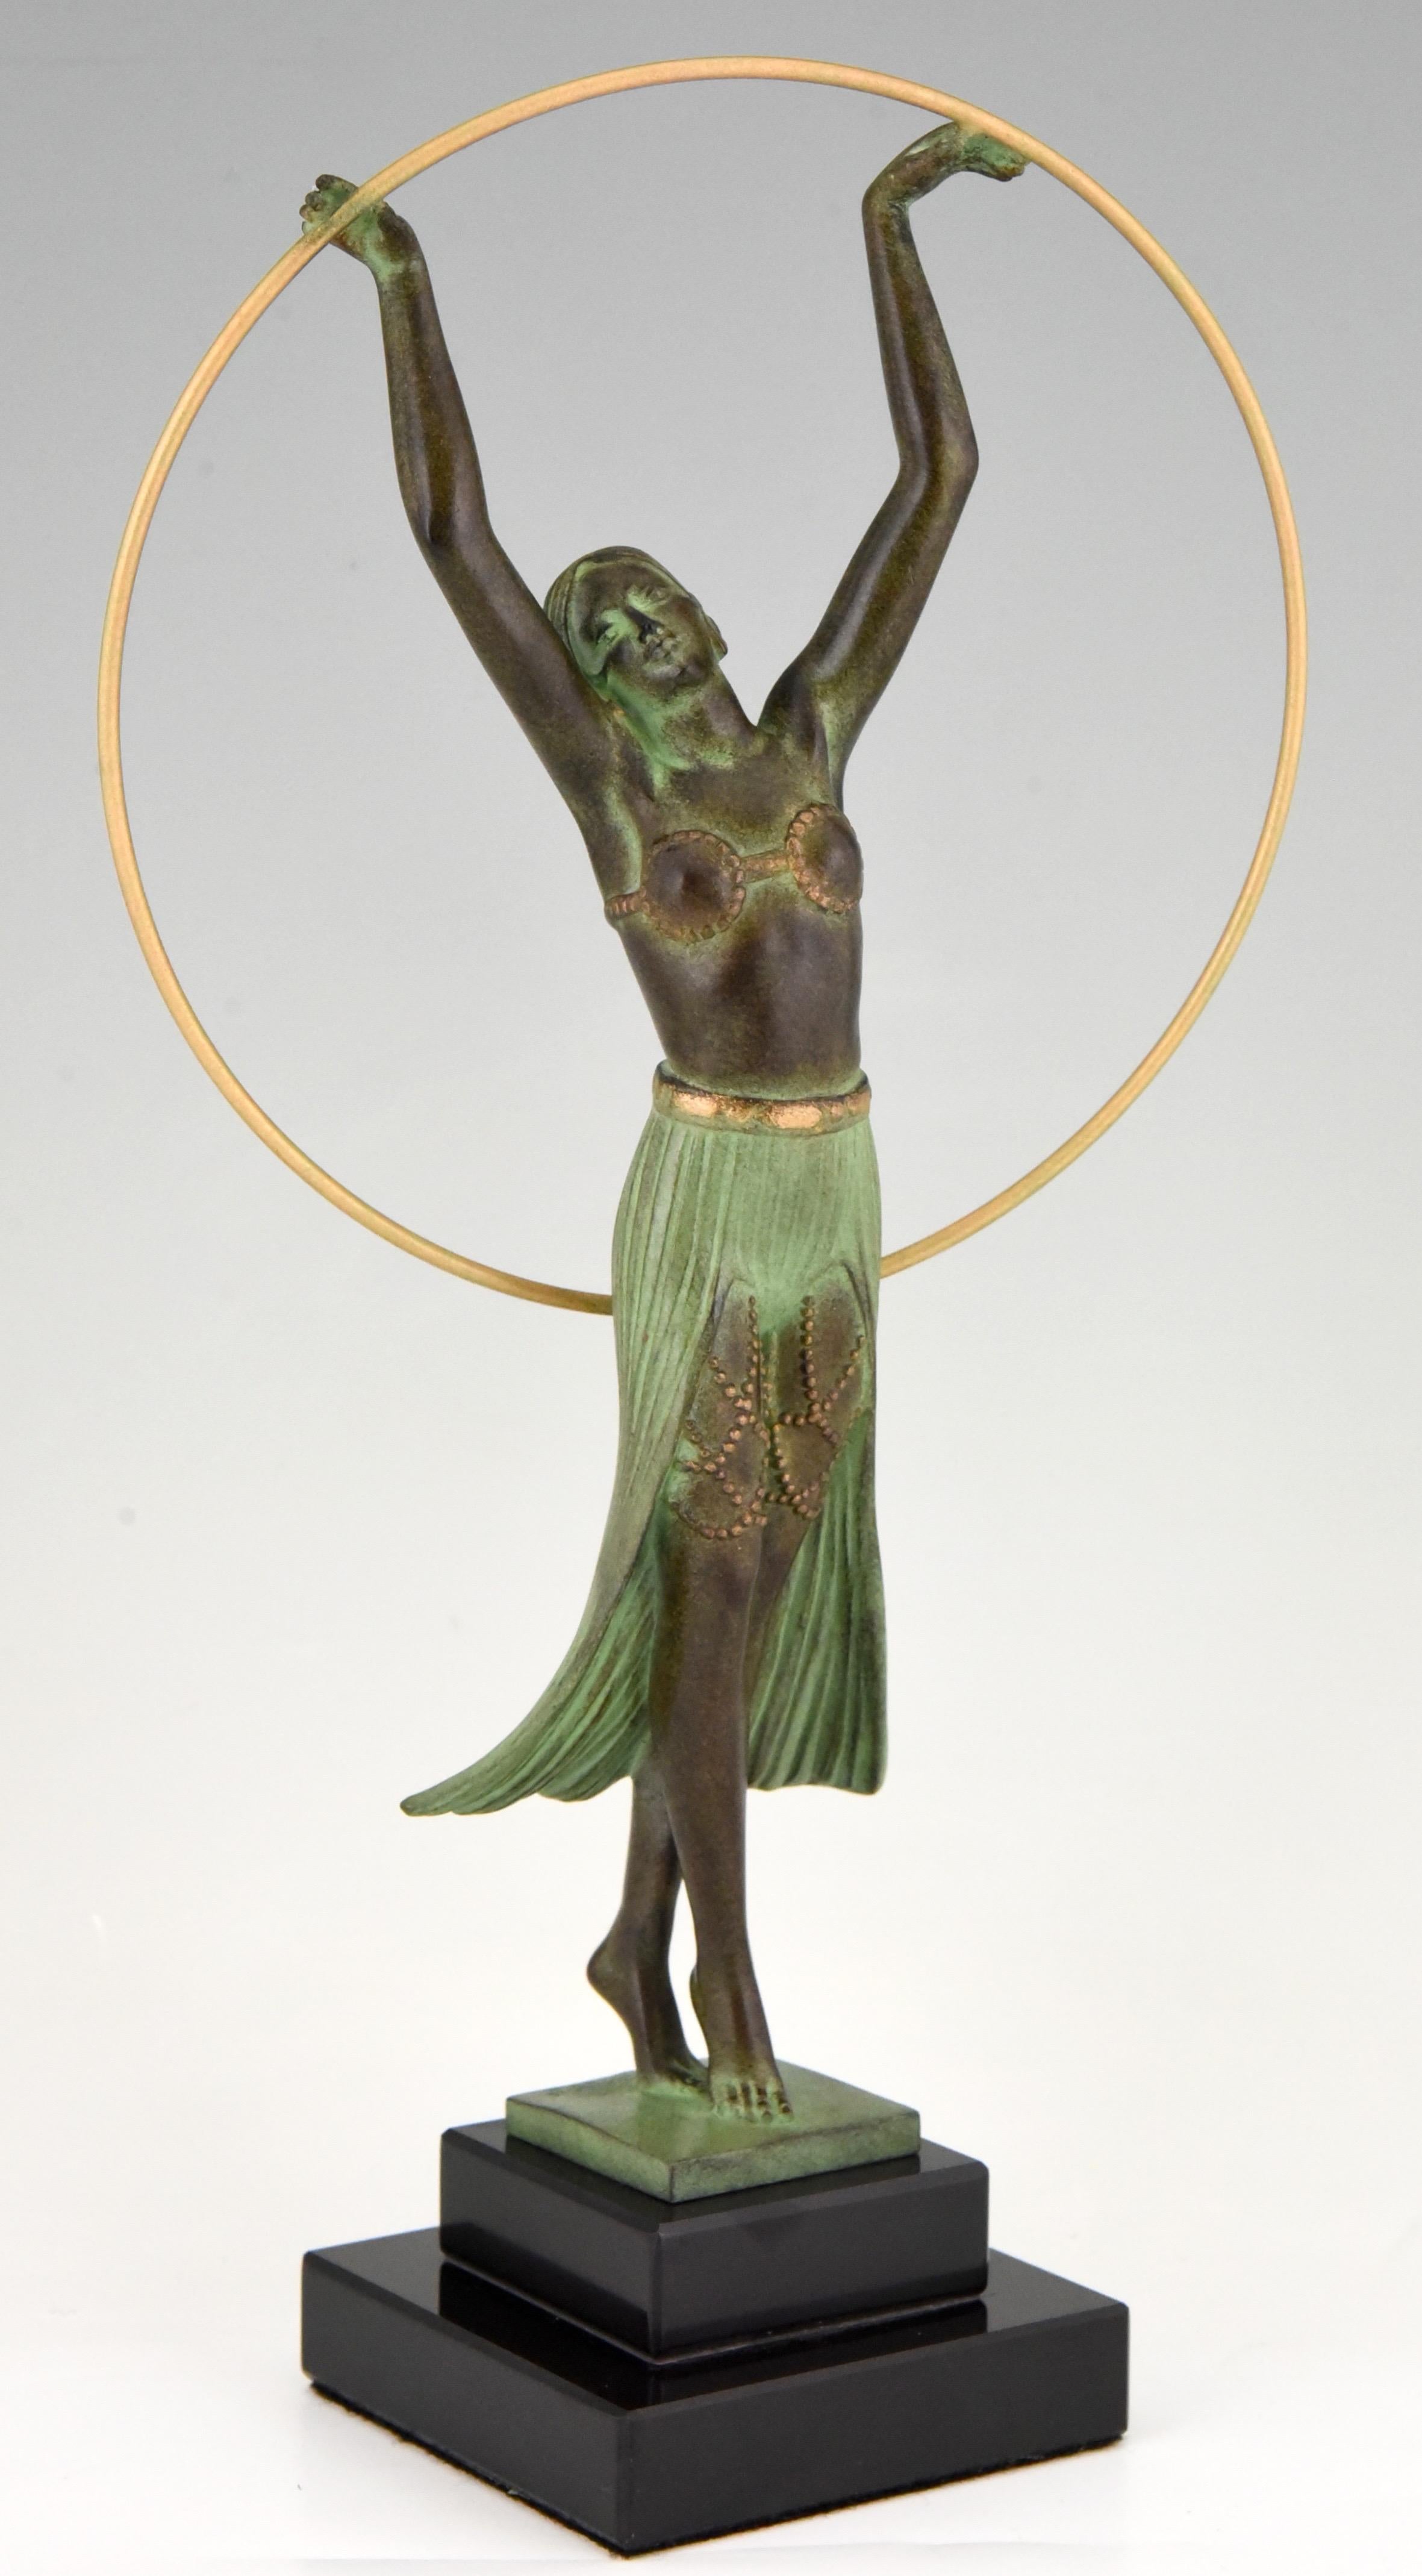 Elégante sculpture de style Art Deco représentant une femme avec un cerceau, signée par l'artiste français A.I.C., fondue à la fonderie Max Le Verrier.
La sculpture d'art en métal a une belle patine verte et repose sur une base en marbre noir,